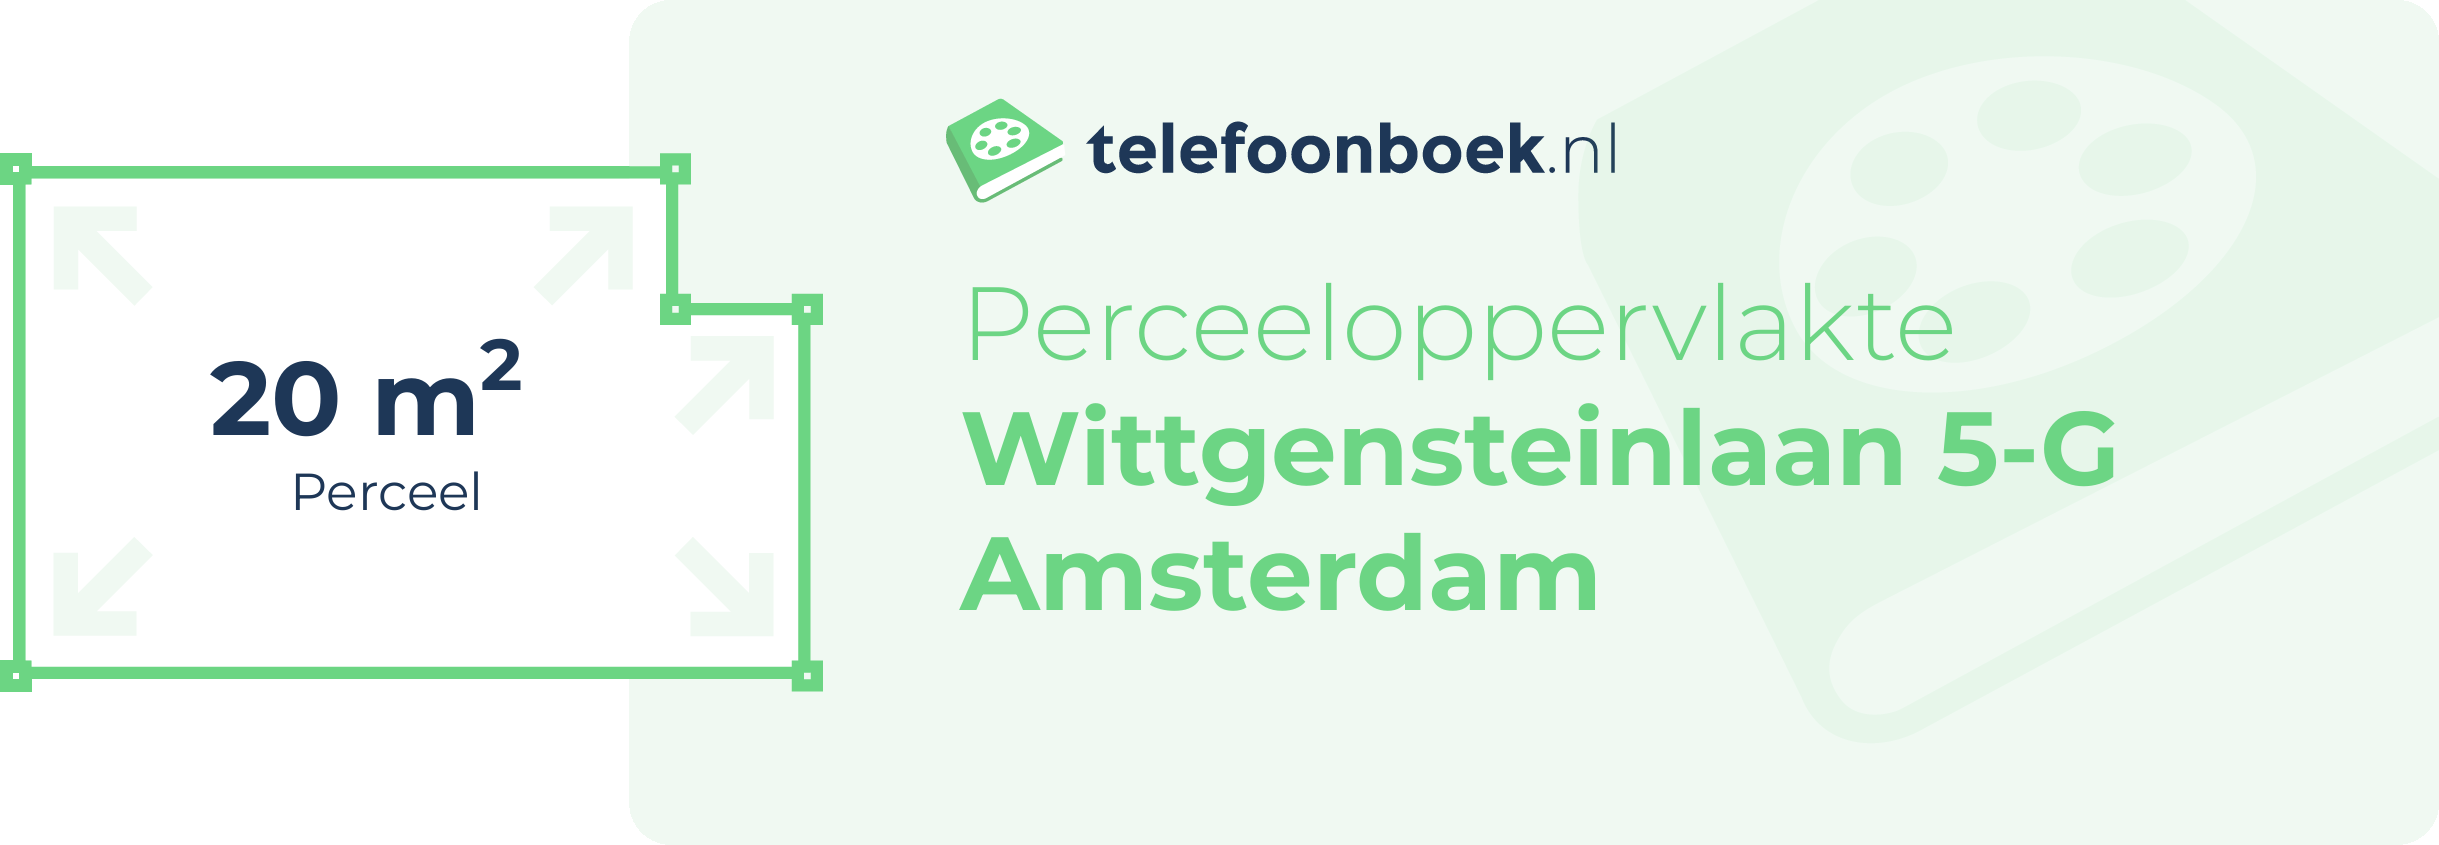 Perceeloppervlakte Wittgensteinlaan 5-G Amsterdam